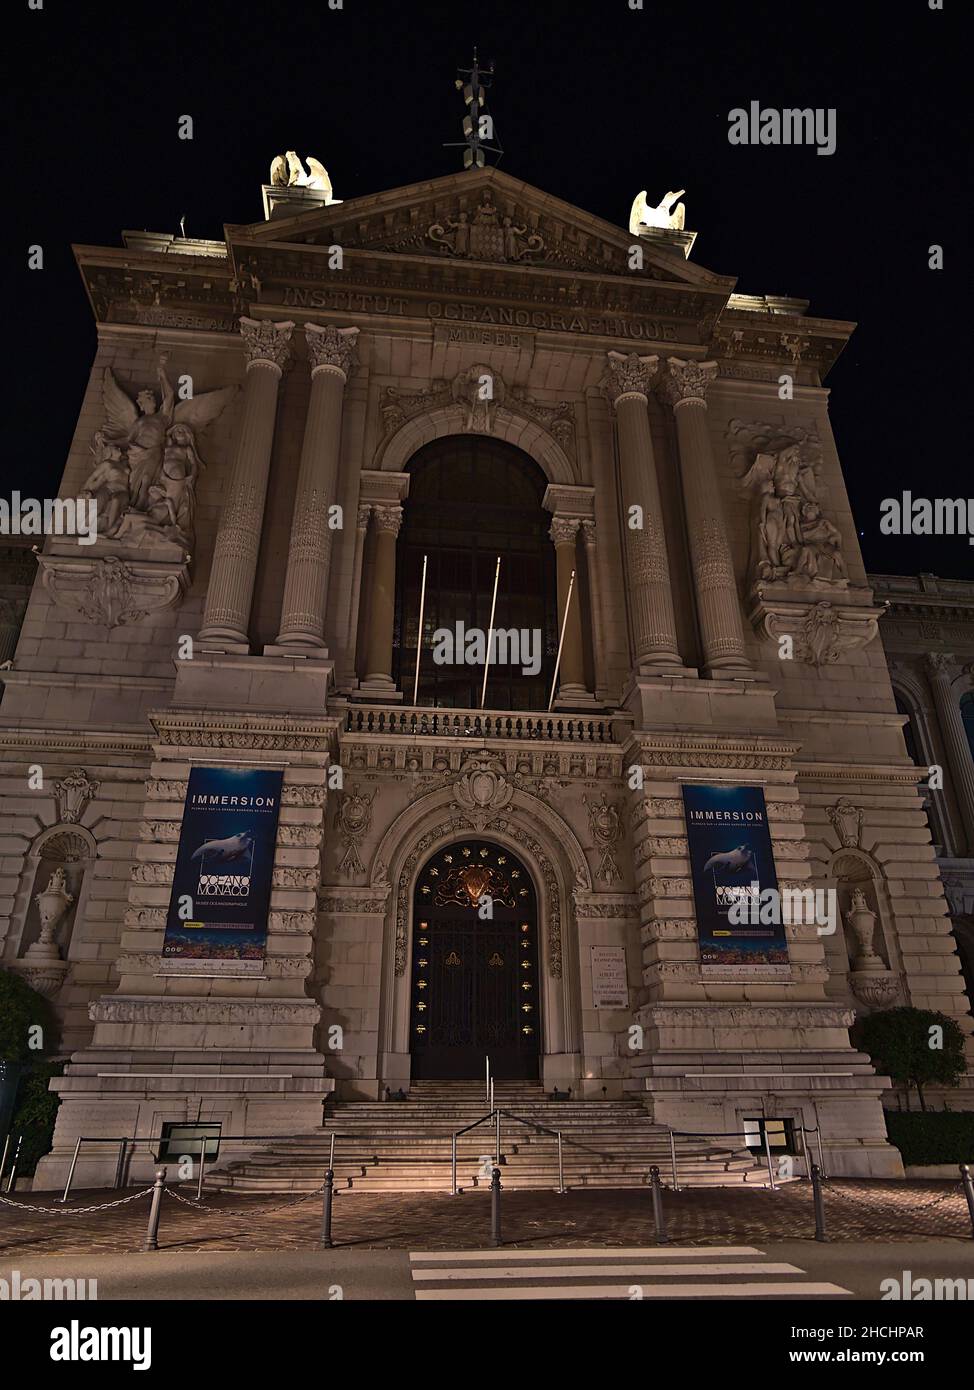 Vista frontale dello storico Museo Oceanografico con facciata decorata illuminata nel Principato di Monaco di notte con facciata illuminata. Foto Stock